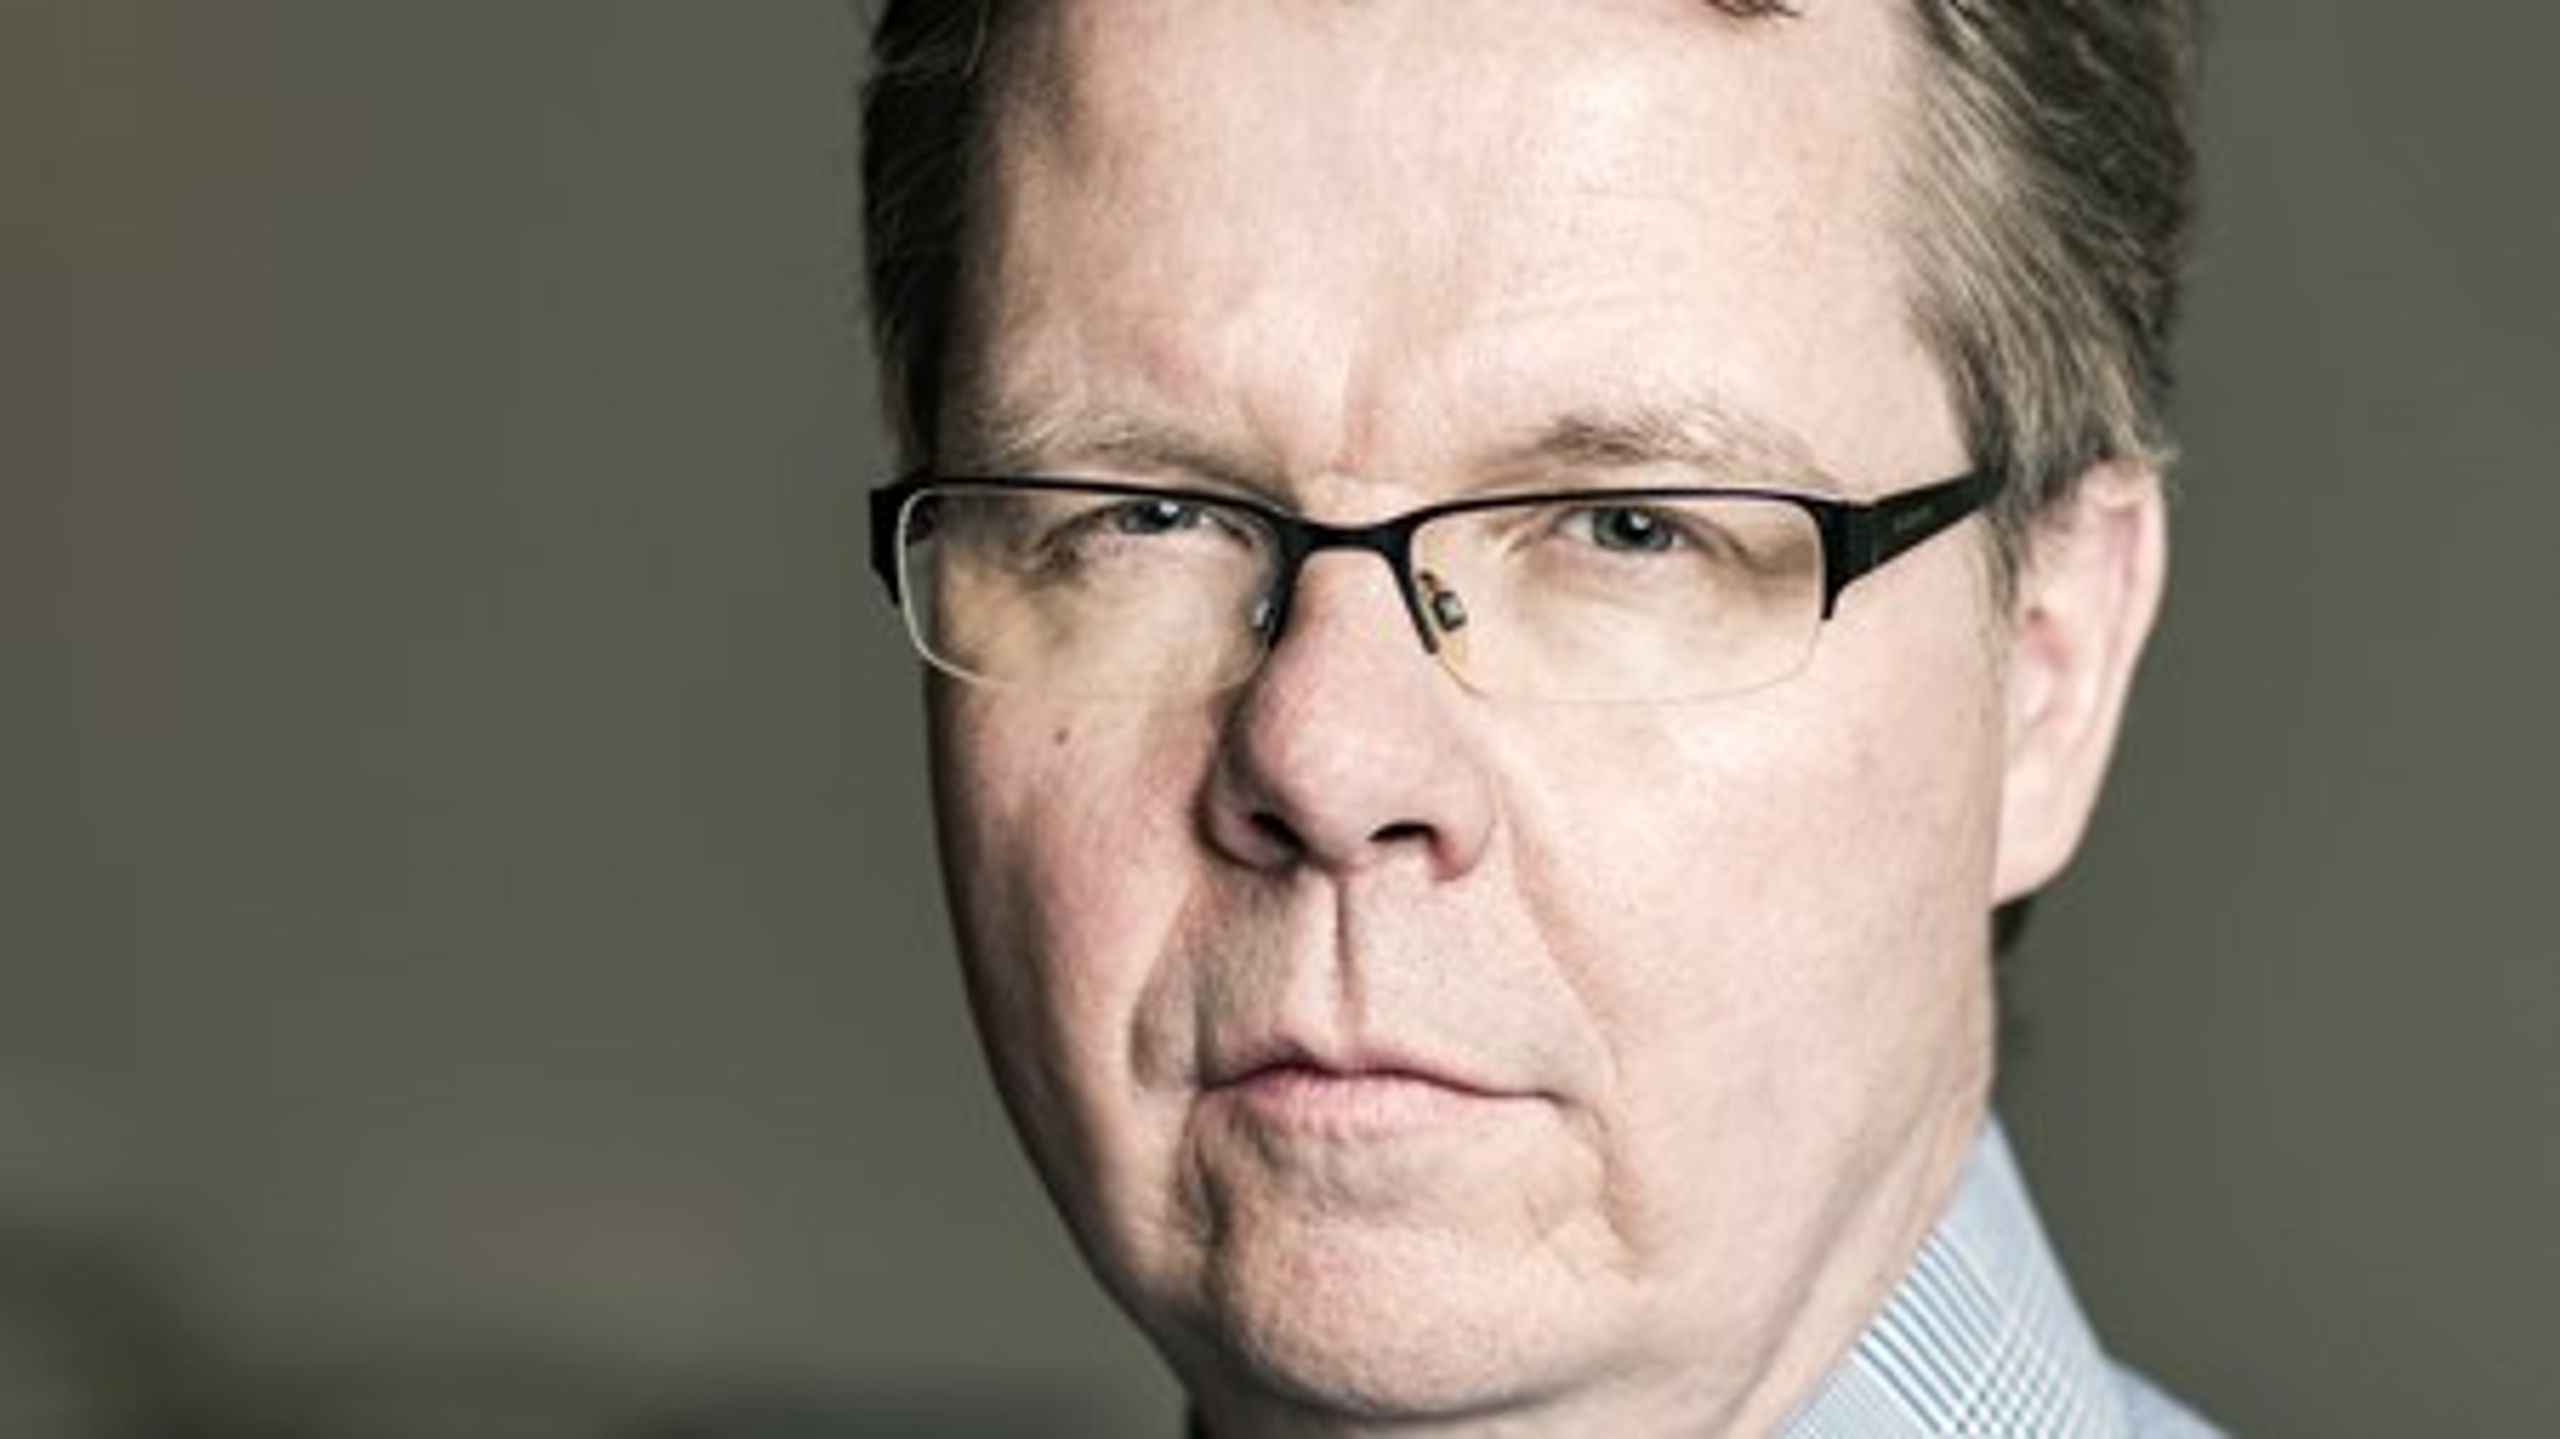 Folketingets Ombudsmand, Jørgen Steen Sørensen, fastholder, at offentligt ansatte og instanser generelt skal være tilbageholdende med at politianmelde mindreårige.